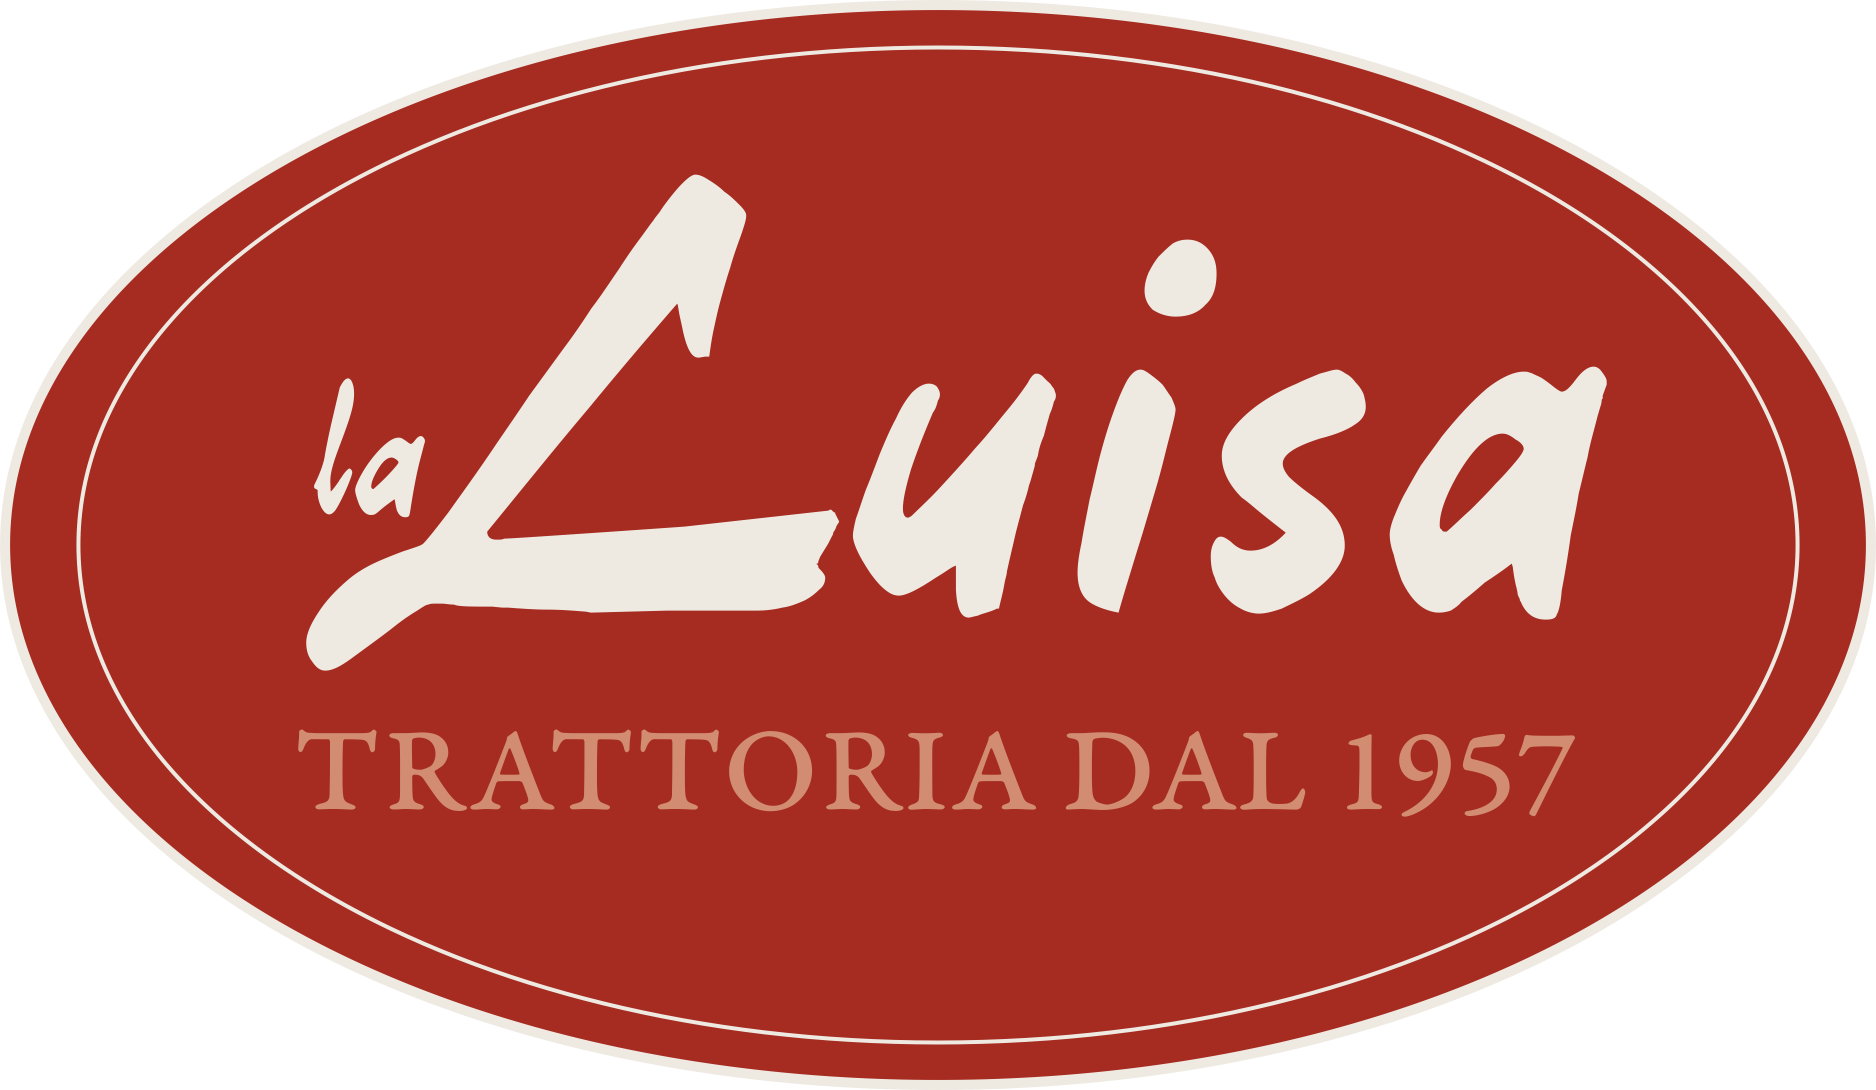 Trattoria La Luisa Bologna dal 1957